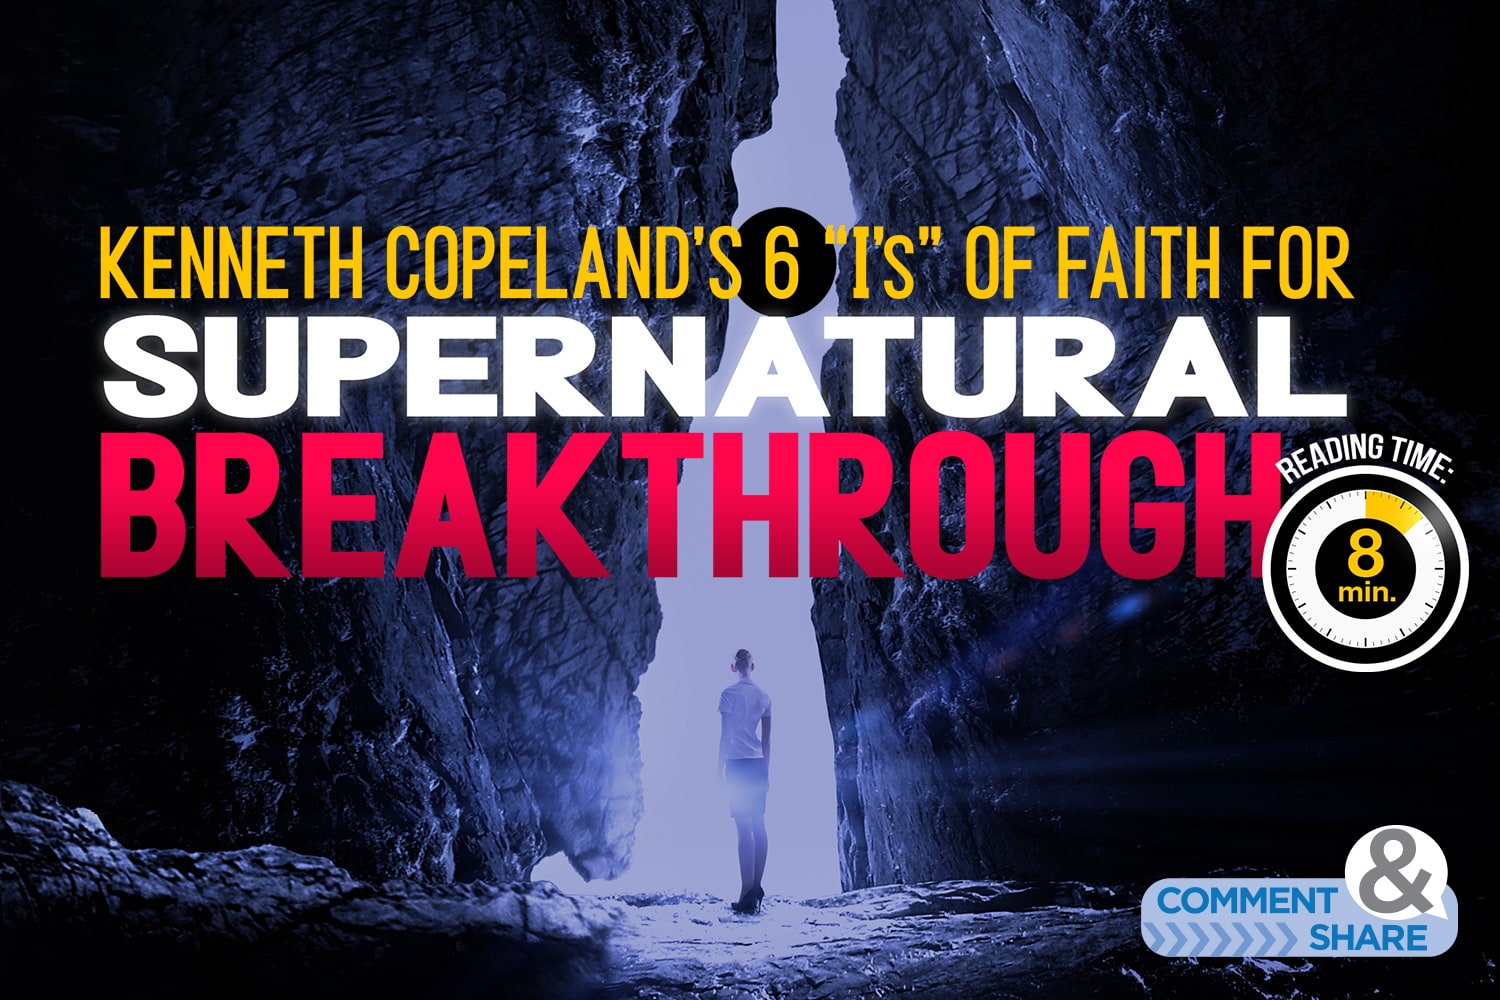 Kenneth Copeland's 6 I's of Faith